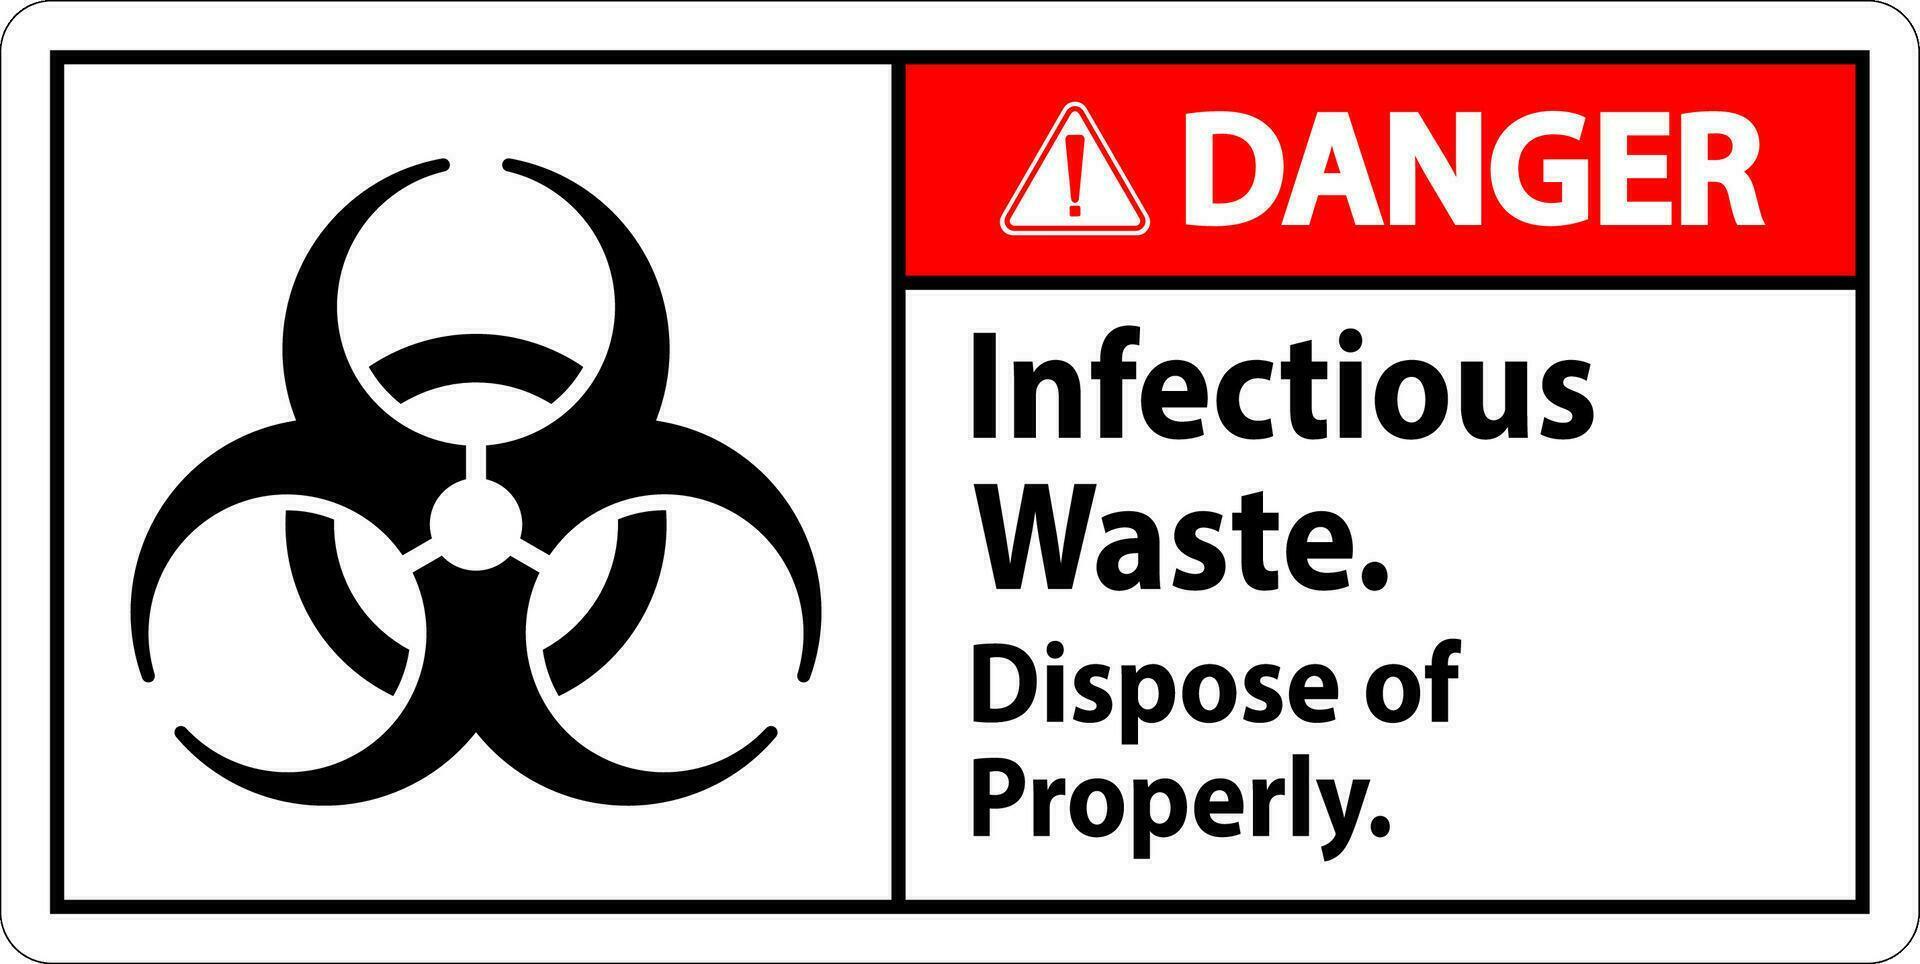 biohazard fara märka infektiös avfall, kassera av ordentligt vektor